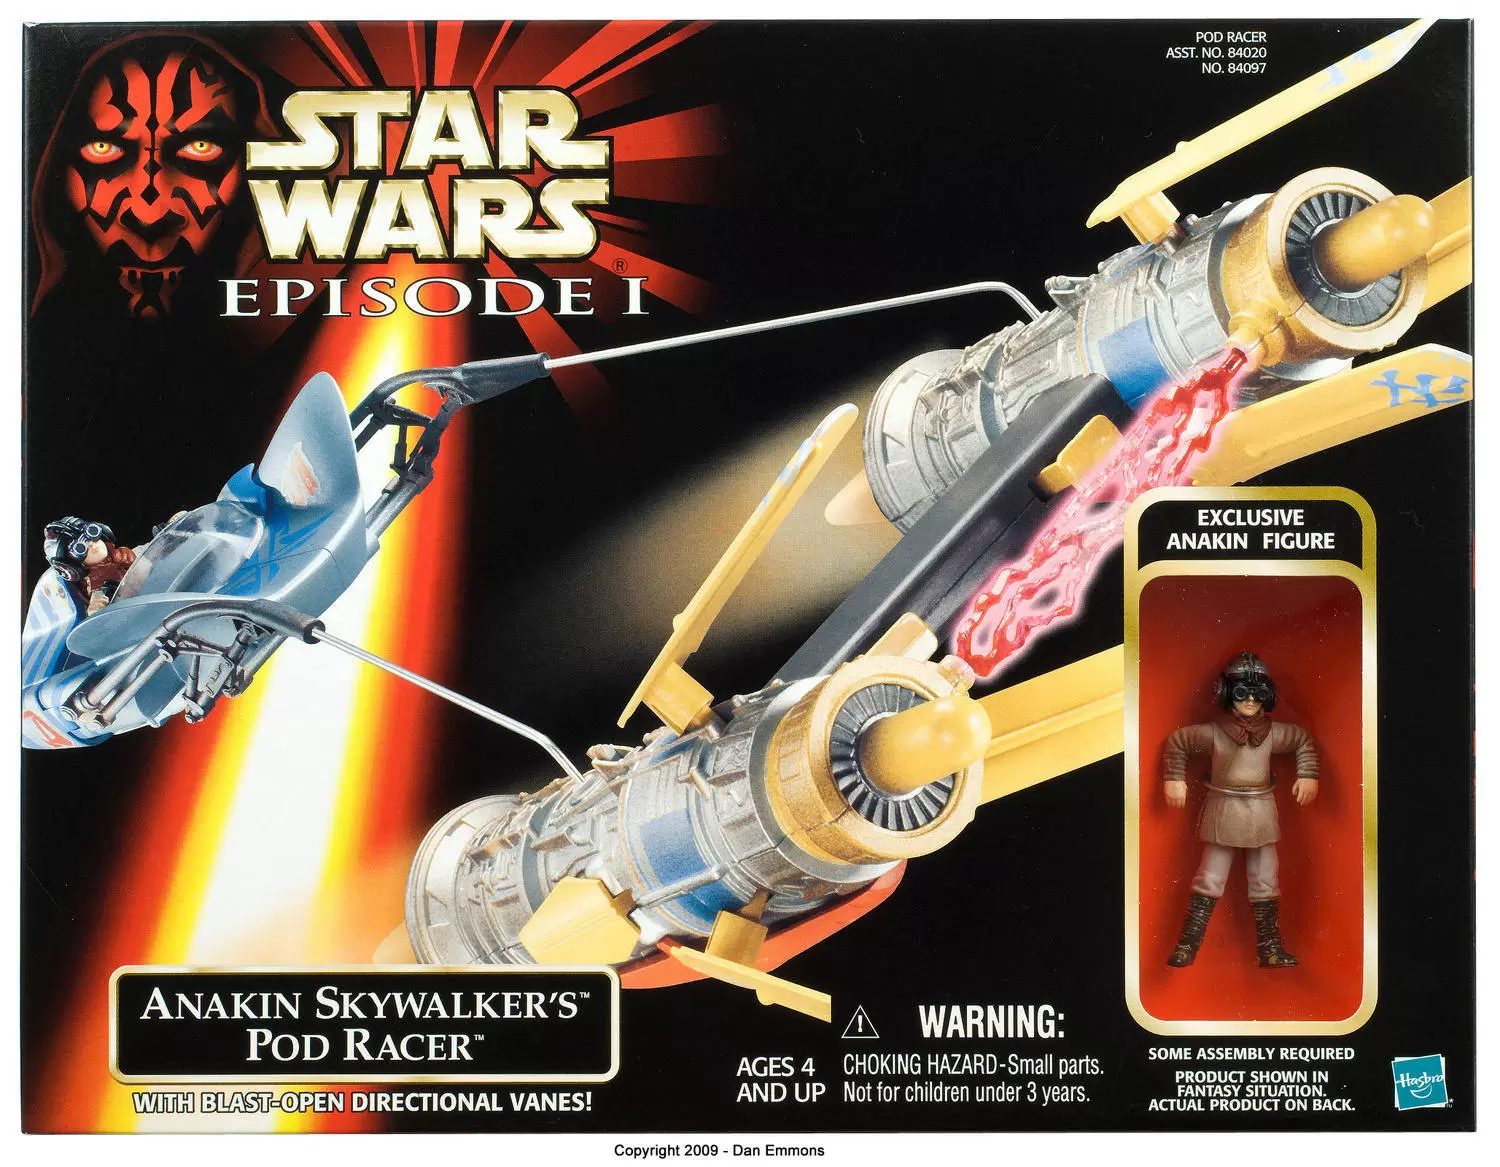 Anakin Skywalker For Pod Racer Star Wars Episode I Collection 1999 